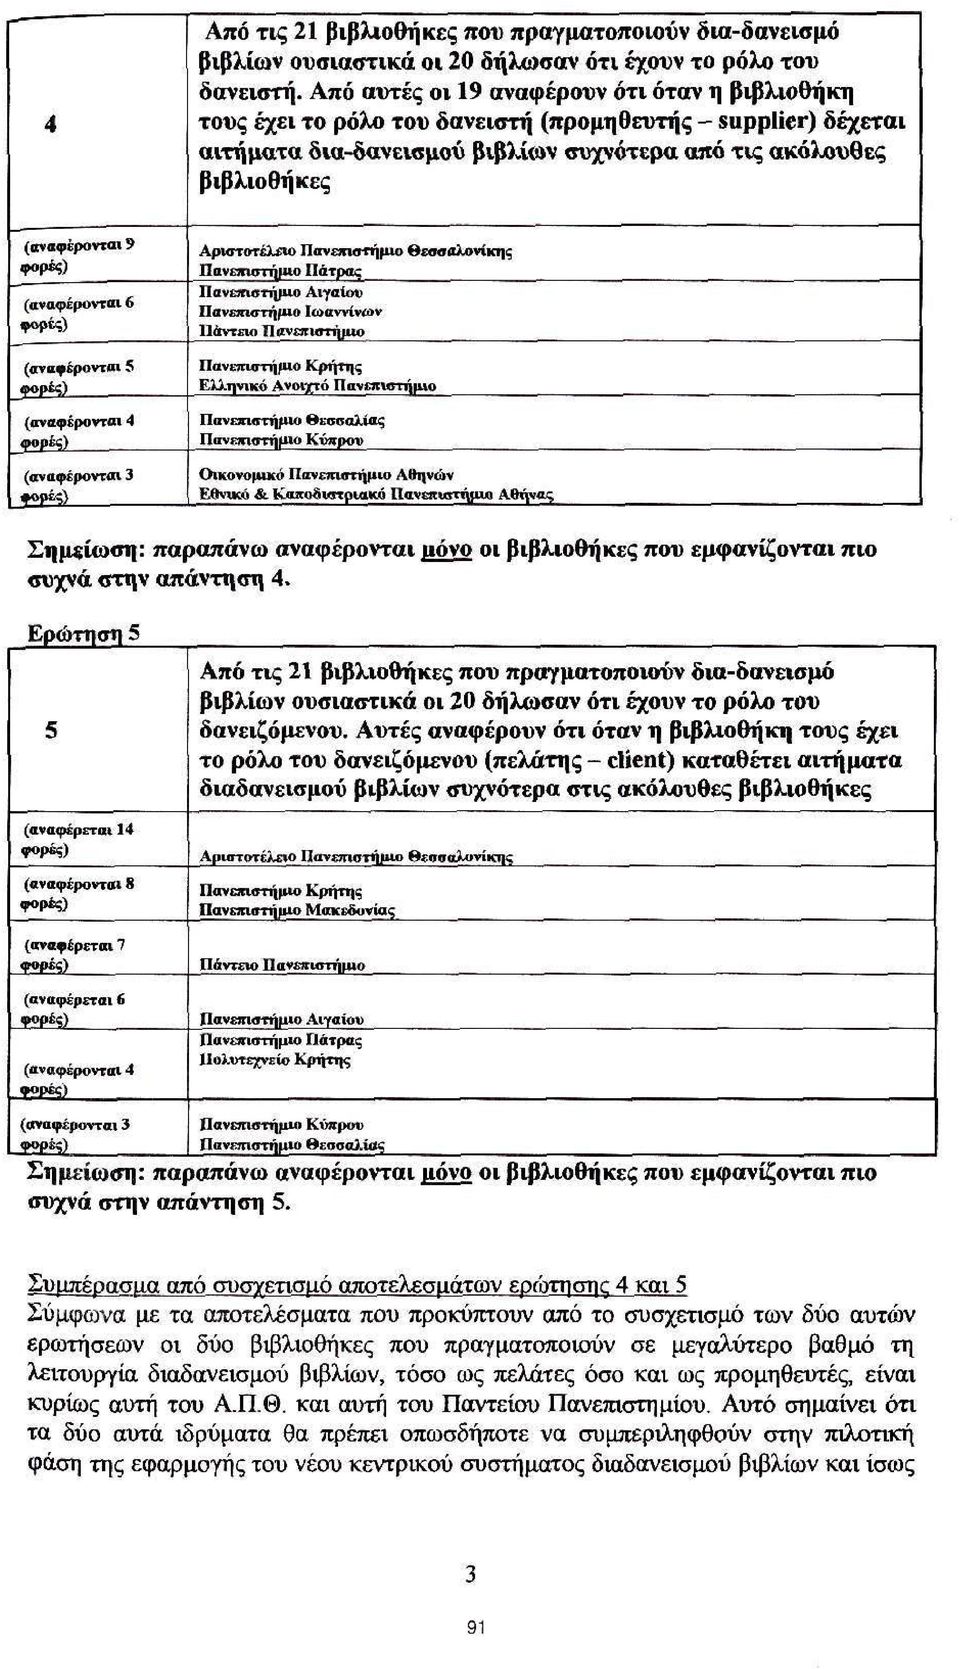 Αριστοτέλειο Πάτρας θεσσαλονίκης (αναφέρονται ο Αιγαίον Ιωαννίνων Πάντειο (αναφέρονται 5 Κρήτης Ελληνικό Ανοτ/τό (αναφέρονται Θεσσαλίας Κύπρου (αναφέρονται Οικονομικό Αθηνών EWviKii & Καποοιστριακό